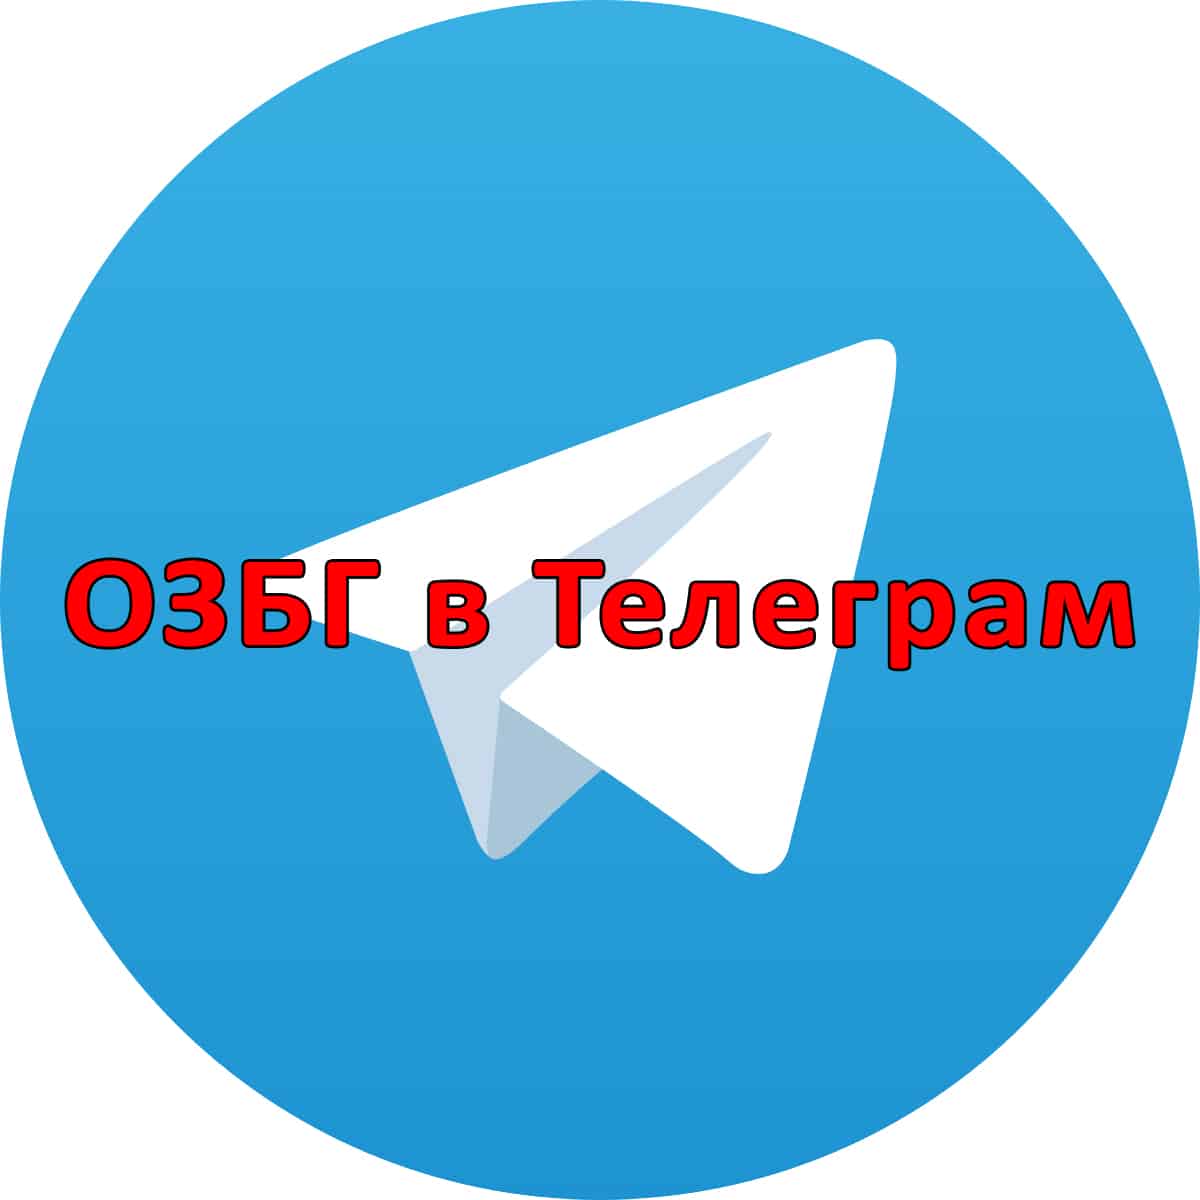 ОЗБГ вече има канал и в Телеграм който е достъпен